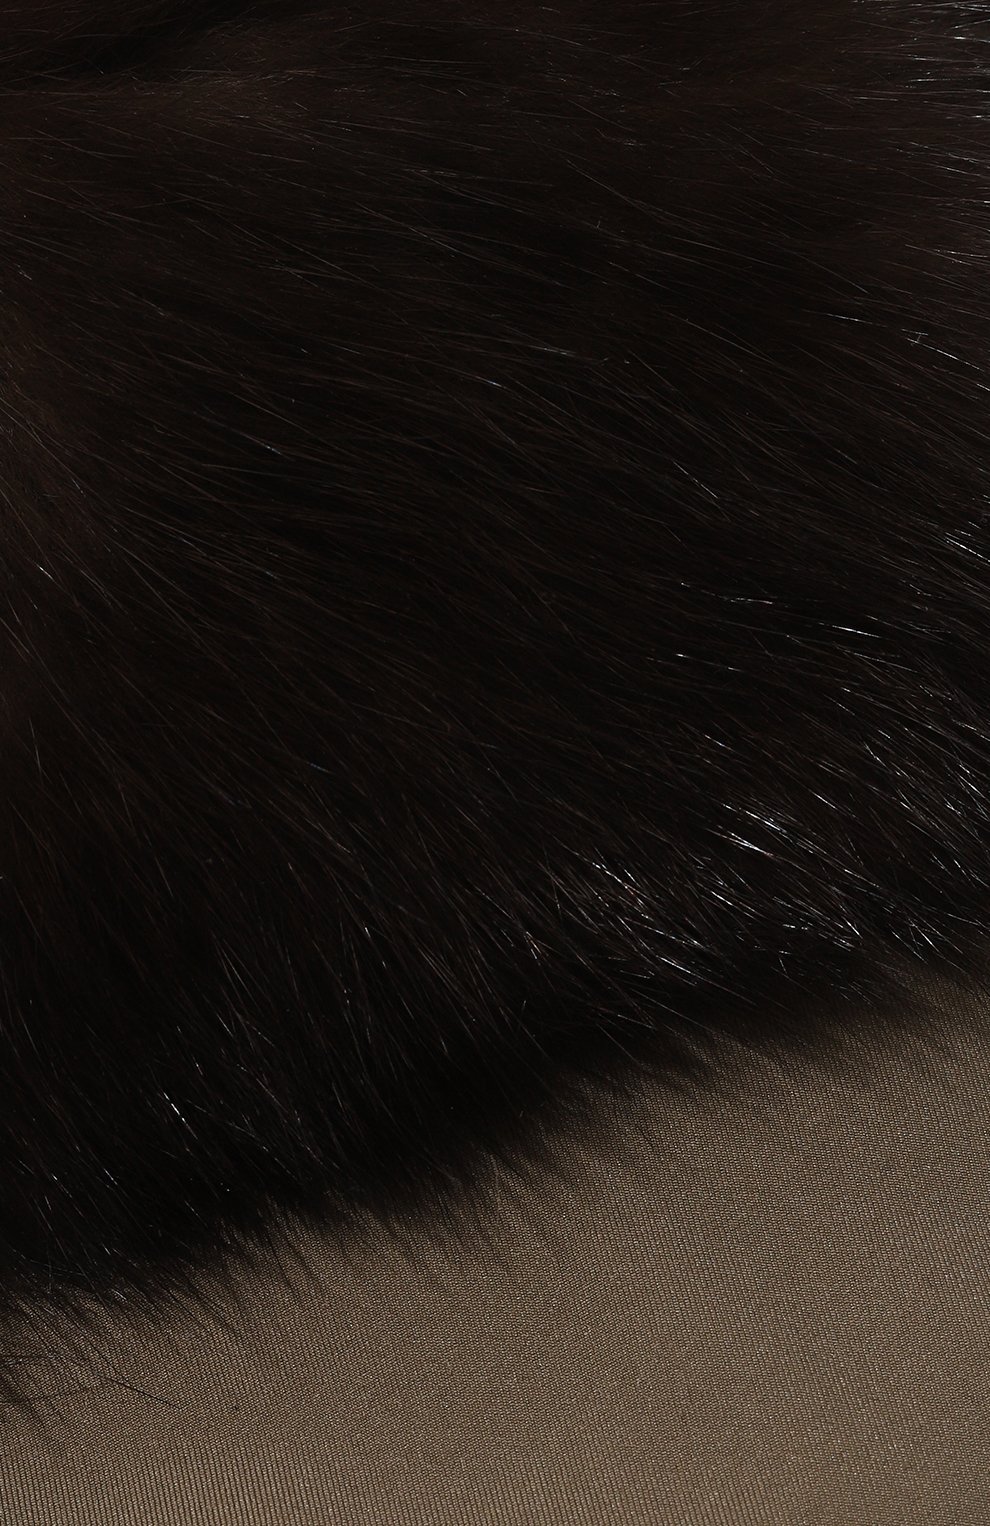 Женская утепленная панама BLACK SABLE хаки цвета, арт. BS-005P | Фото 4 (Материал: Текстиль, Кашемир, Шерсть, Синтетический материал, Натуральный мех)